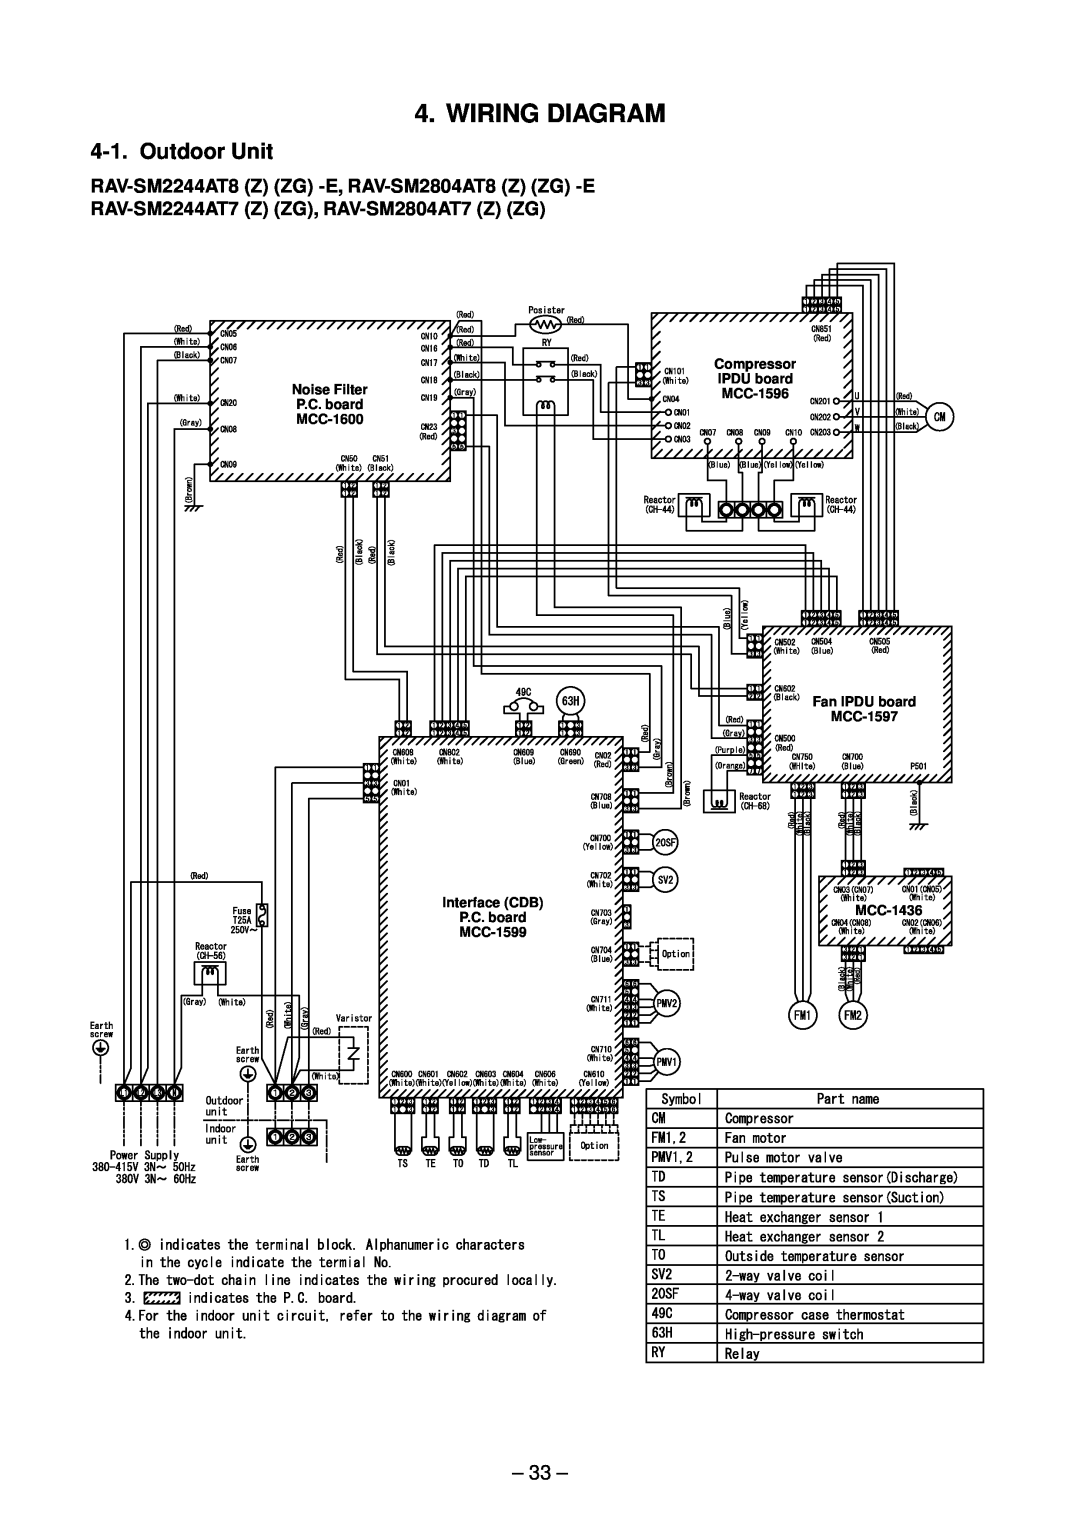 Toshiba RAV-SM2804AT8ZG-E, RAV-SM2244AT8ZG-E, RAV-SM2804AT8Z-E, RAV-SM2244AT7ZG, RAV-SM2804AT8-E Wiring Diagram, Outdoor Unit 